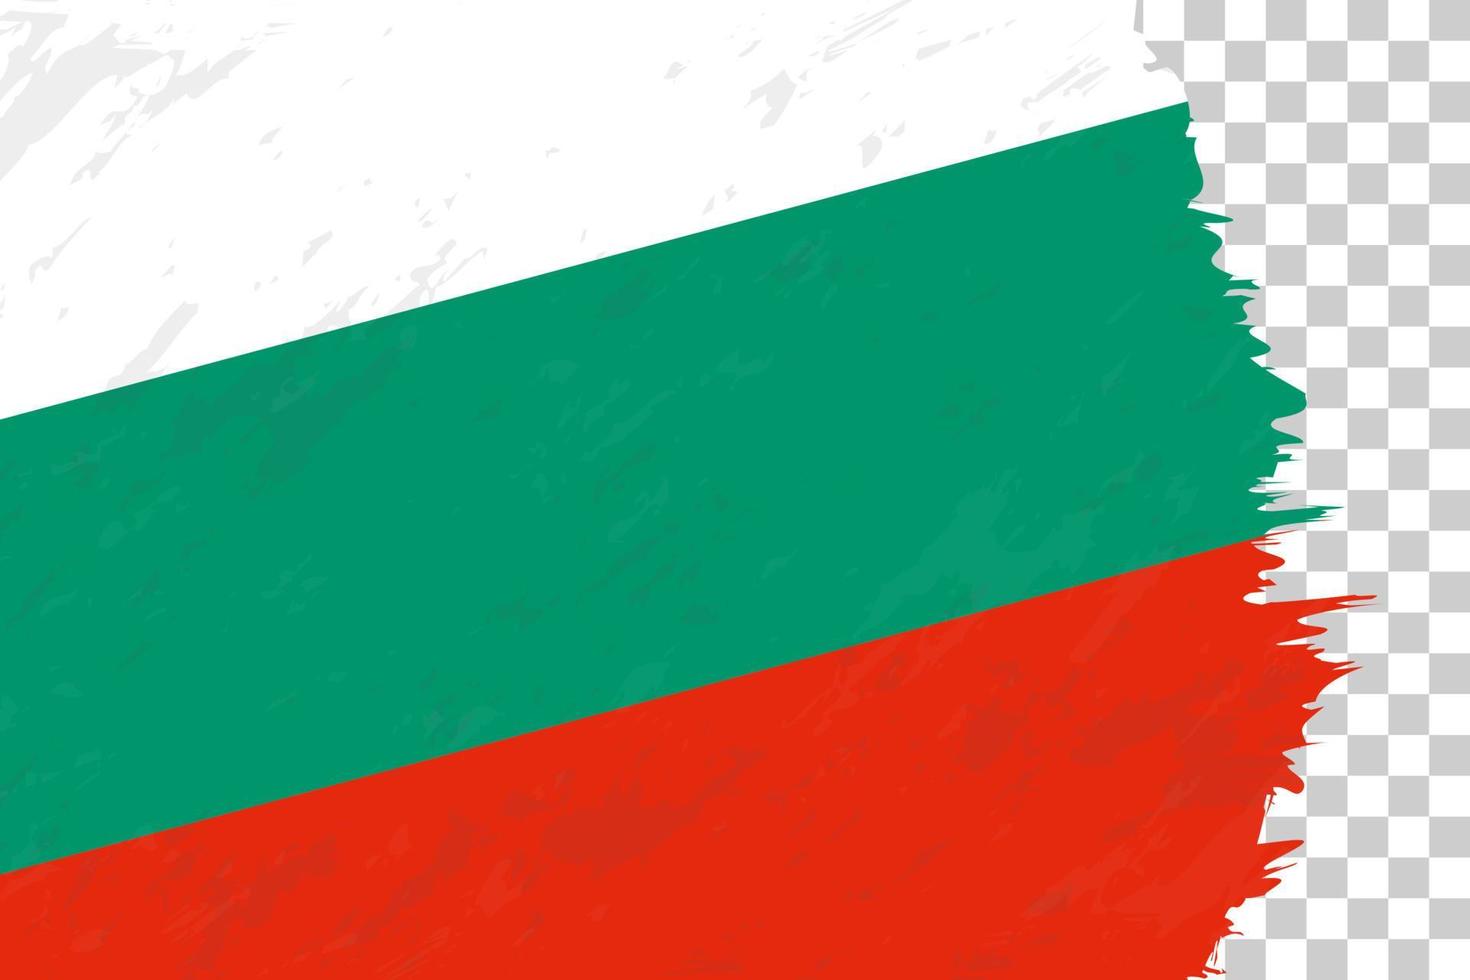 grunge abstrait horizontal brossé drapeau de la bulgarie sur une grille transparente. vecteur